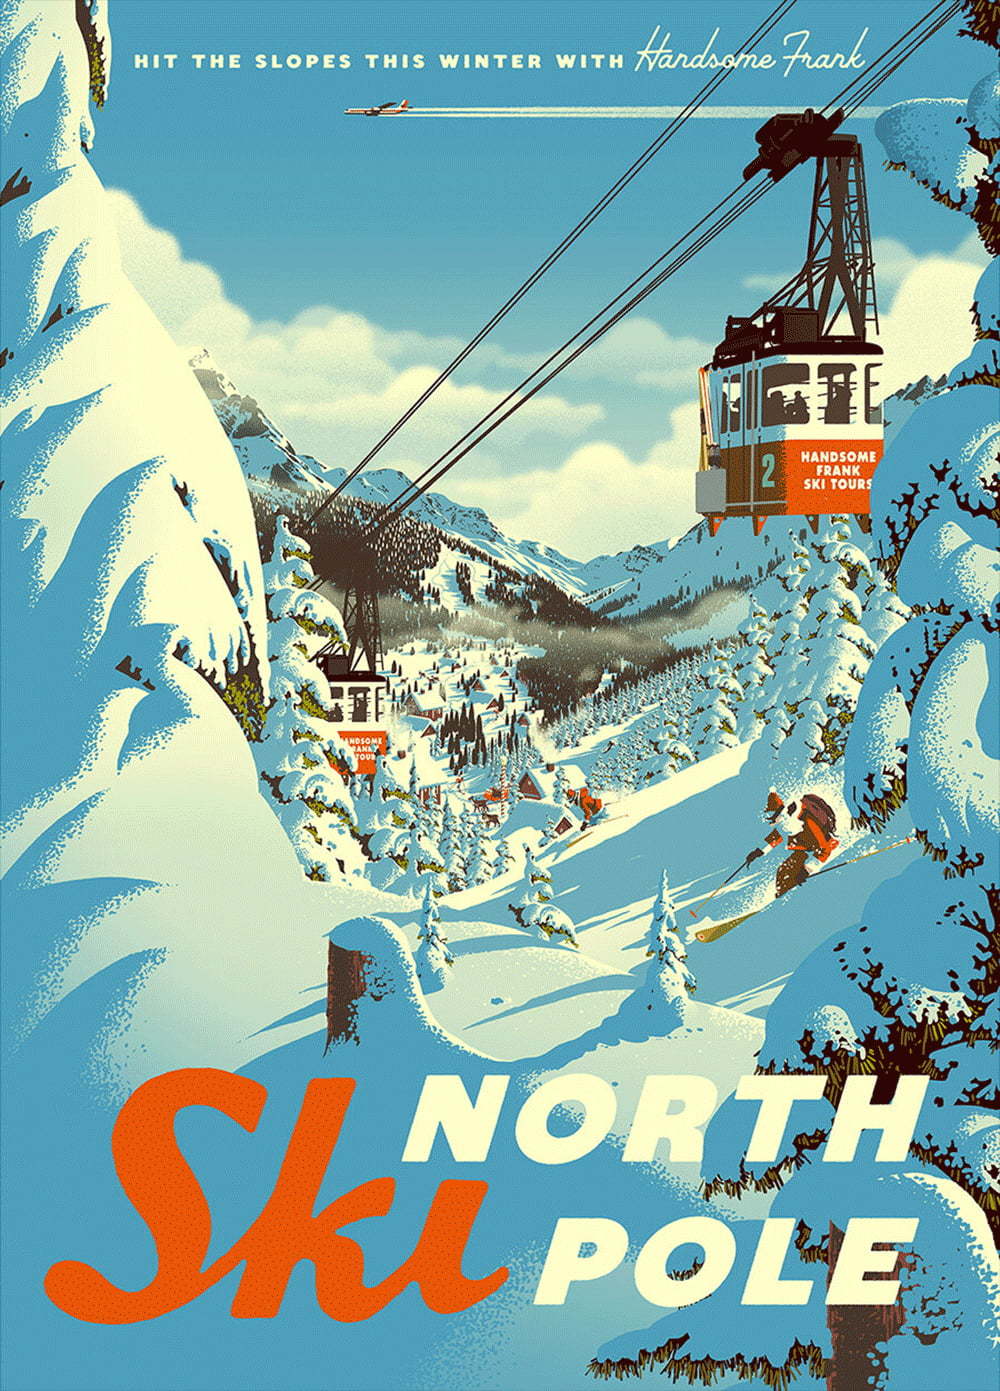 Ski North Pole